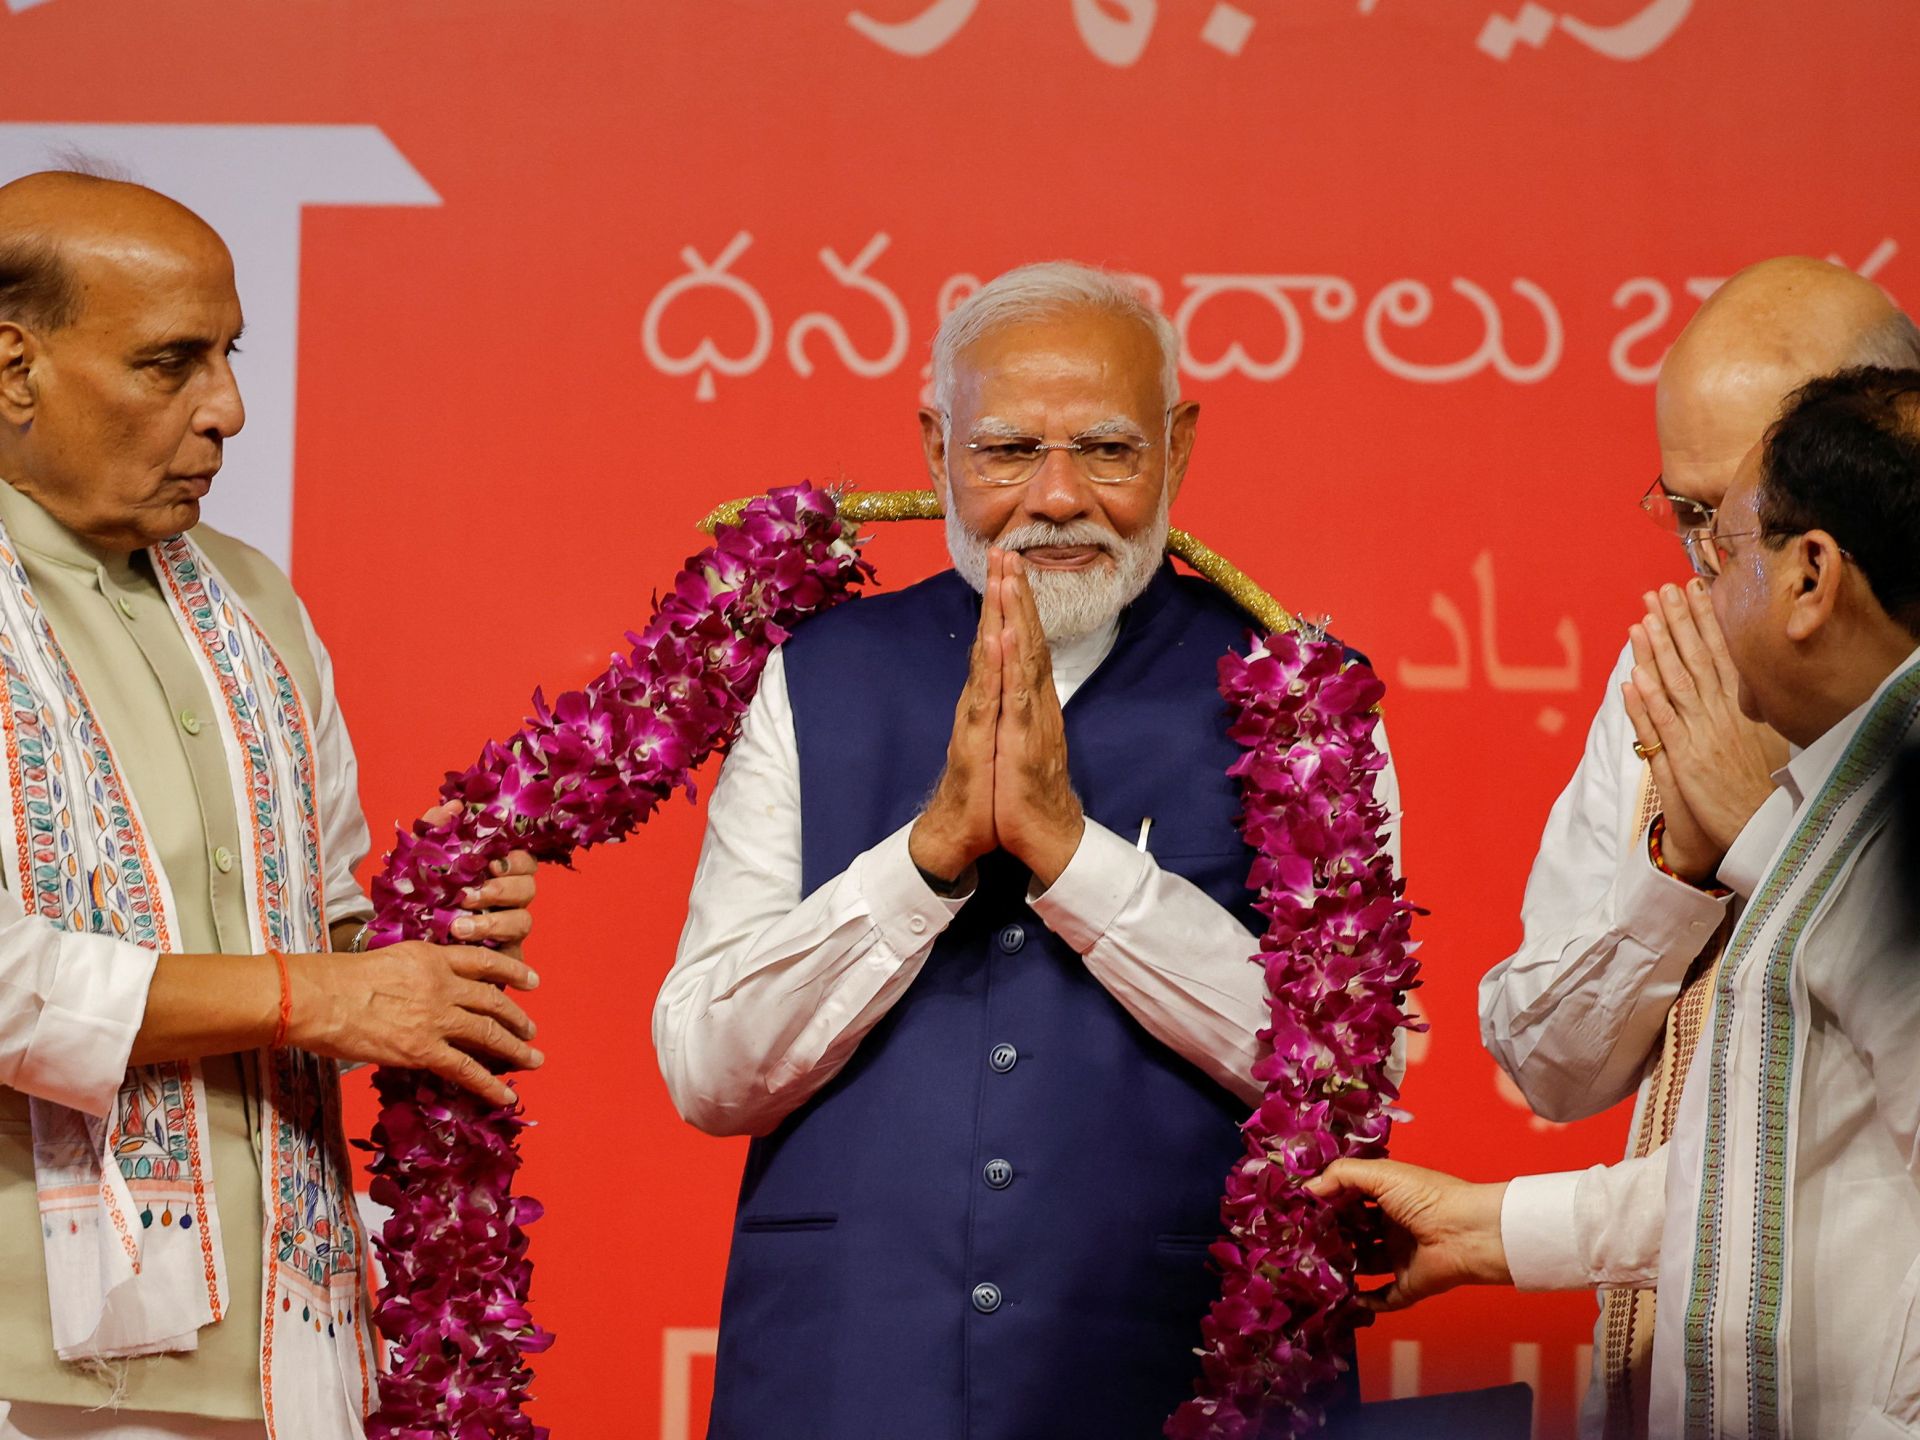 انتخابات الهند.. بريق مودي يخفت ونجم غاندي يسطع من جديد | سياسة – البوكس نيوز